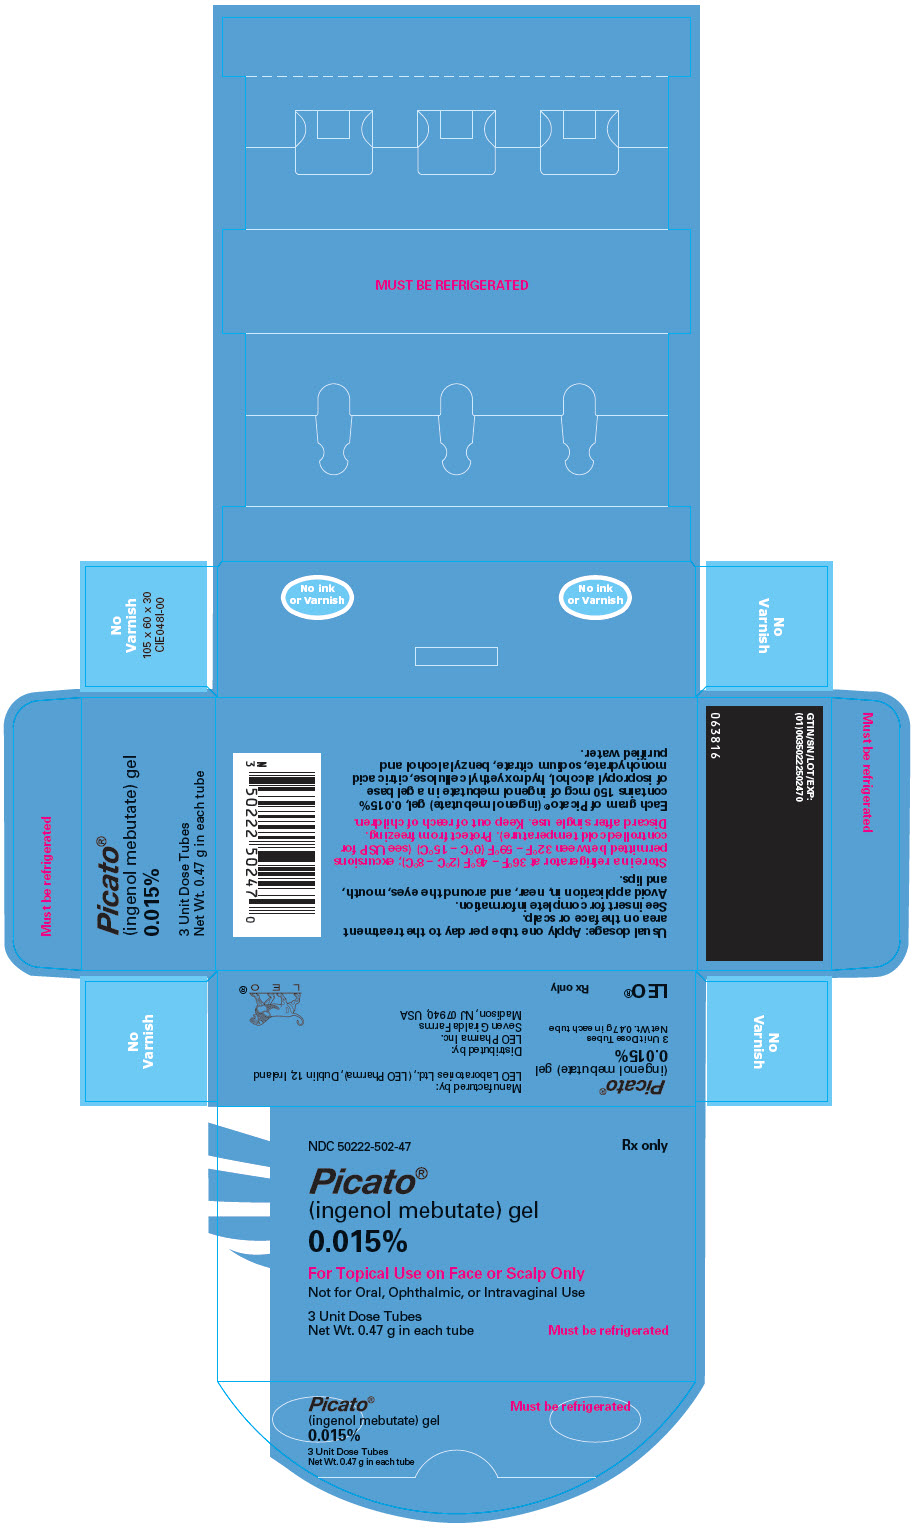 PRINCIPAL DISPLAY PANEL - 0.47 g Tube Carton - 0.015%